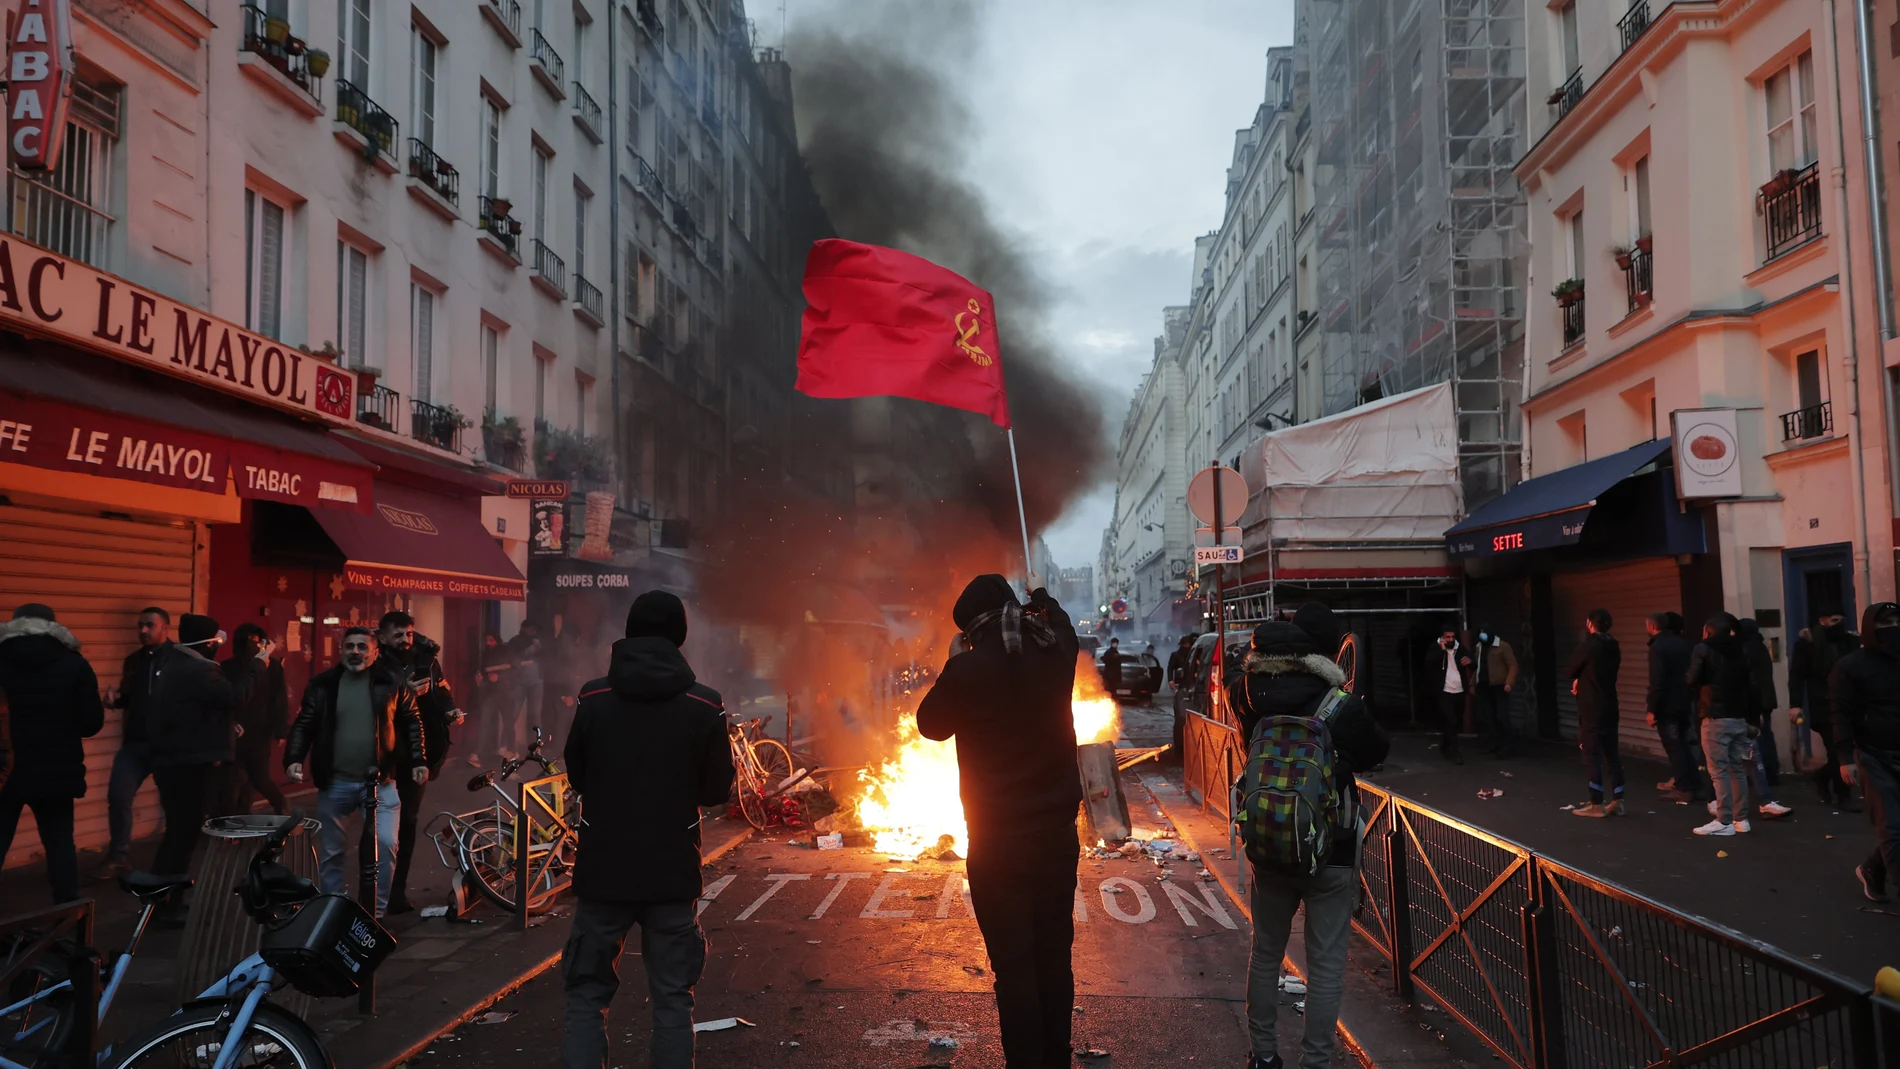 Un miembro de la comunidad kurda ondea las banderas comunistas kurdas junto a una barricada en llamas en la escena del crimen donde tuvo lugar el tiroteo en París